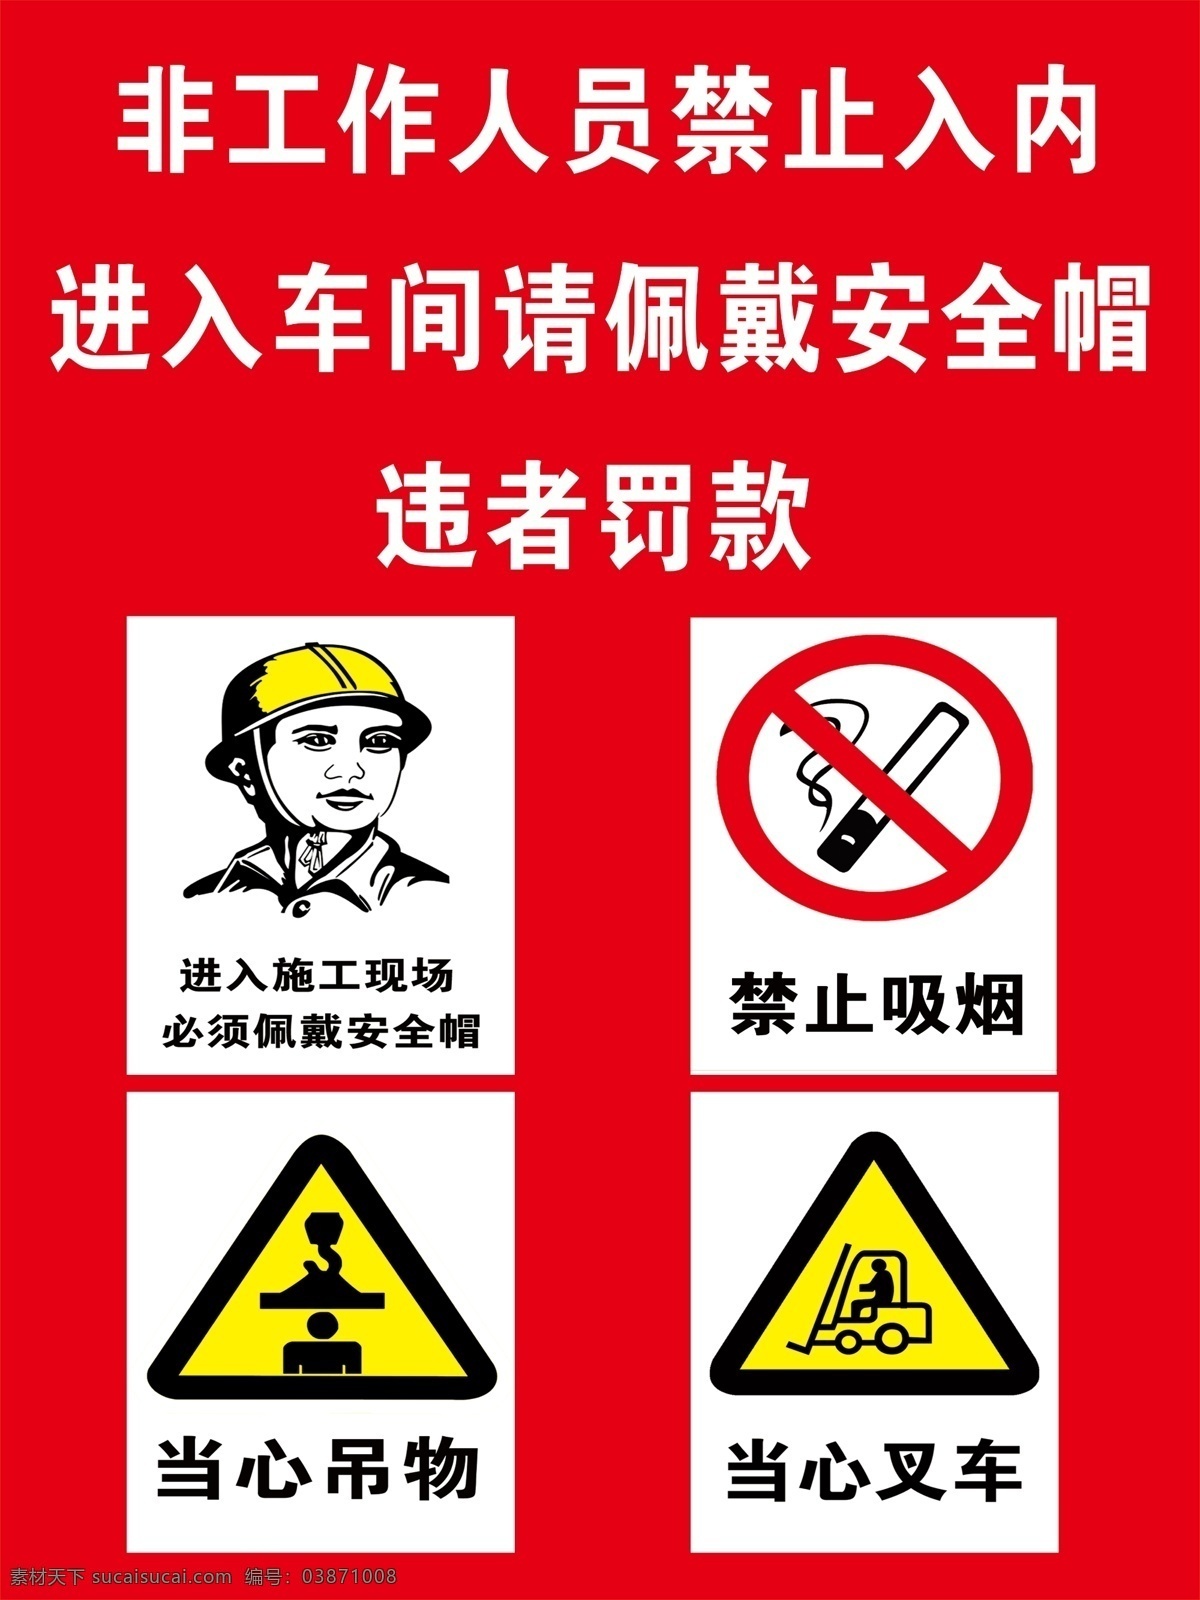 非工作 人员 禁止 入 内 红色 安全 标识 小心坠物 佩戴安全帽 环境设计 建筑设计